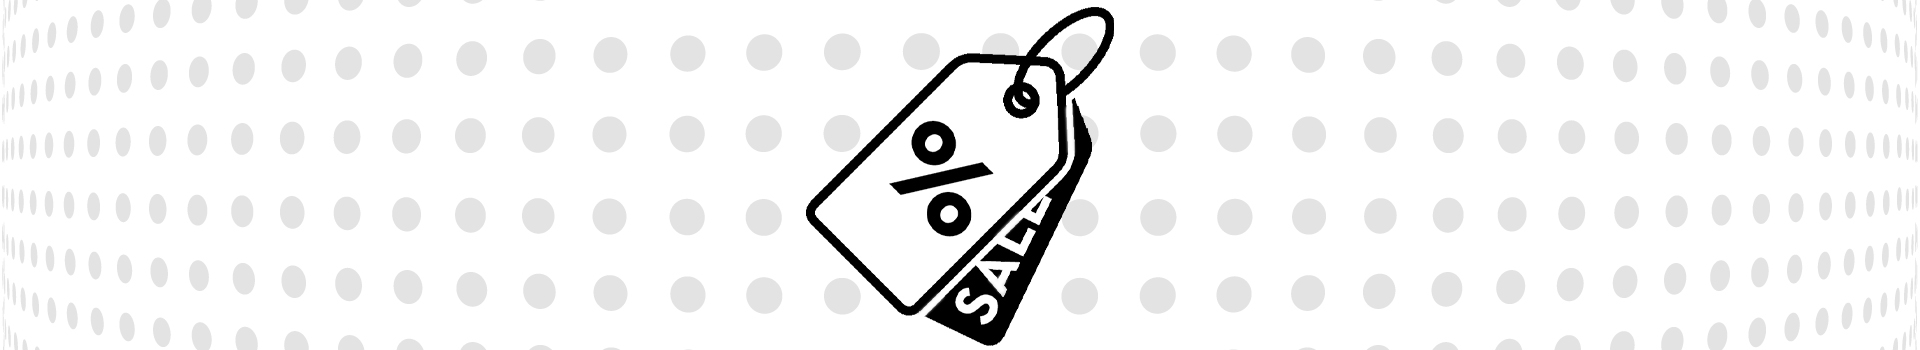 Graphik zweier Preisschilder, eines mit Prozentzeichen, eines mit dem Wort "Sale"